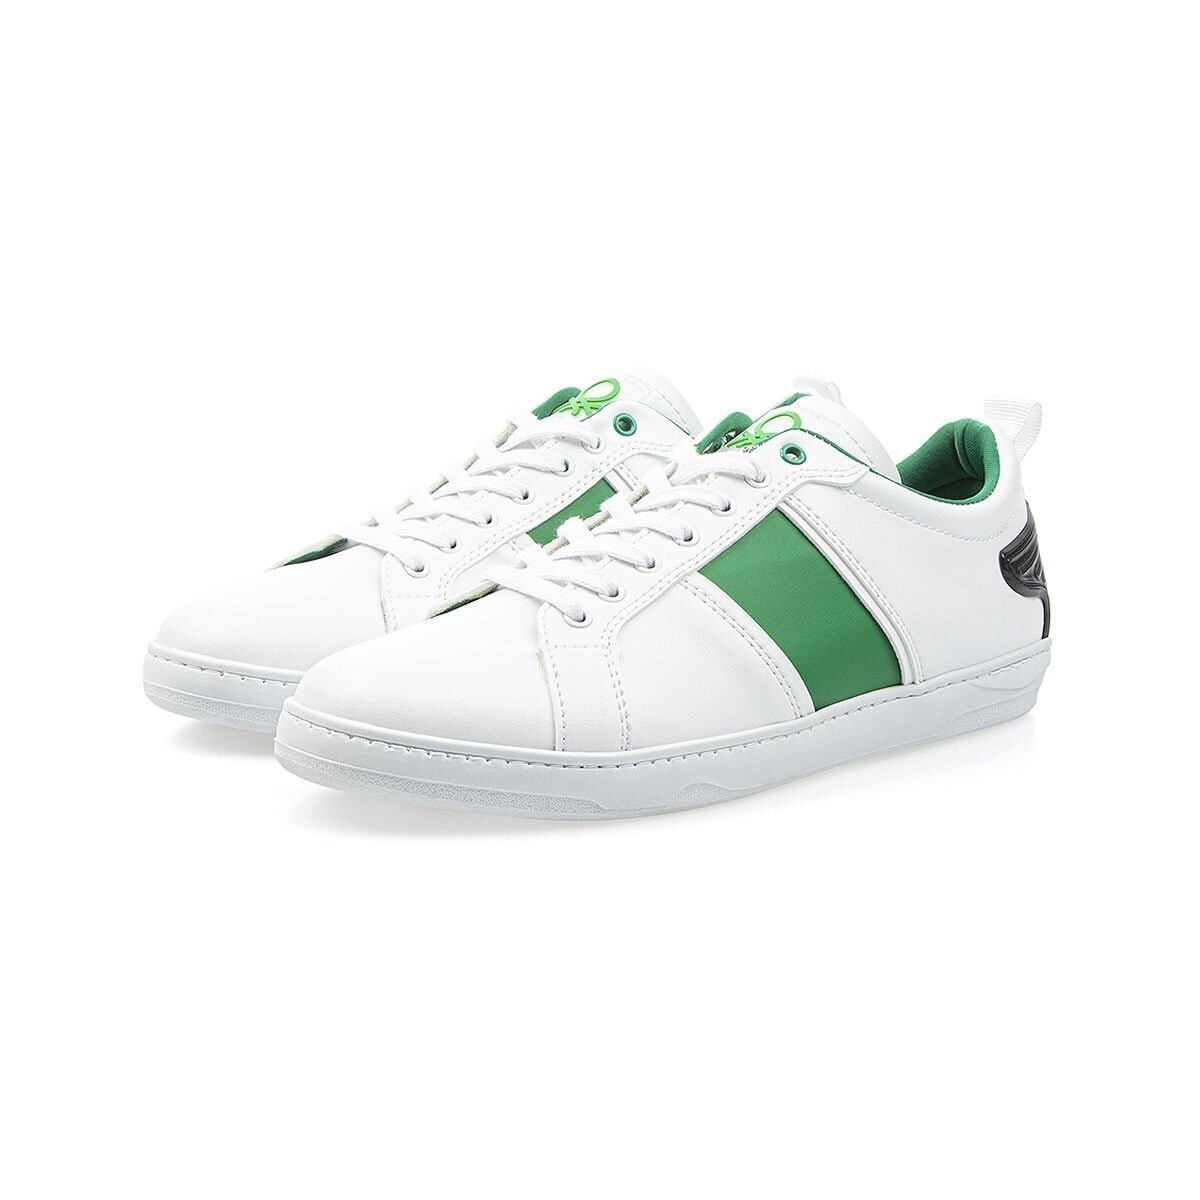 Benetton Erkek Ayakkabı BN-30138 Beyaz-Yeşil